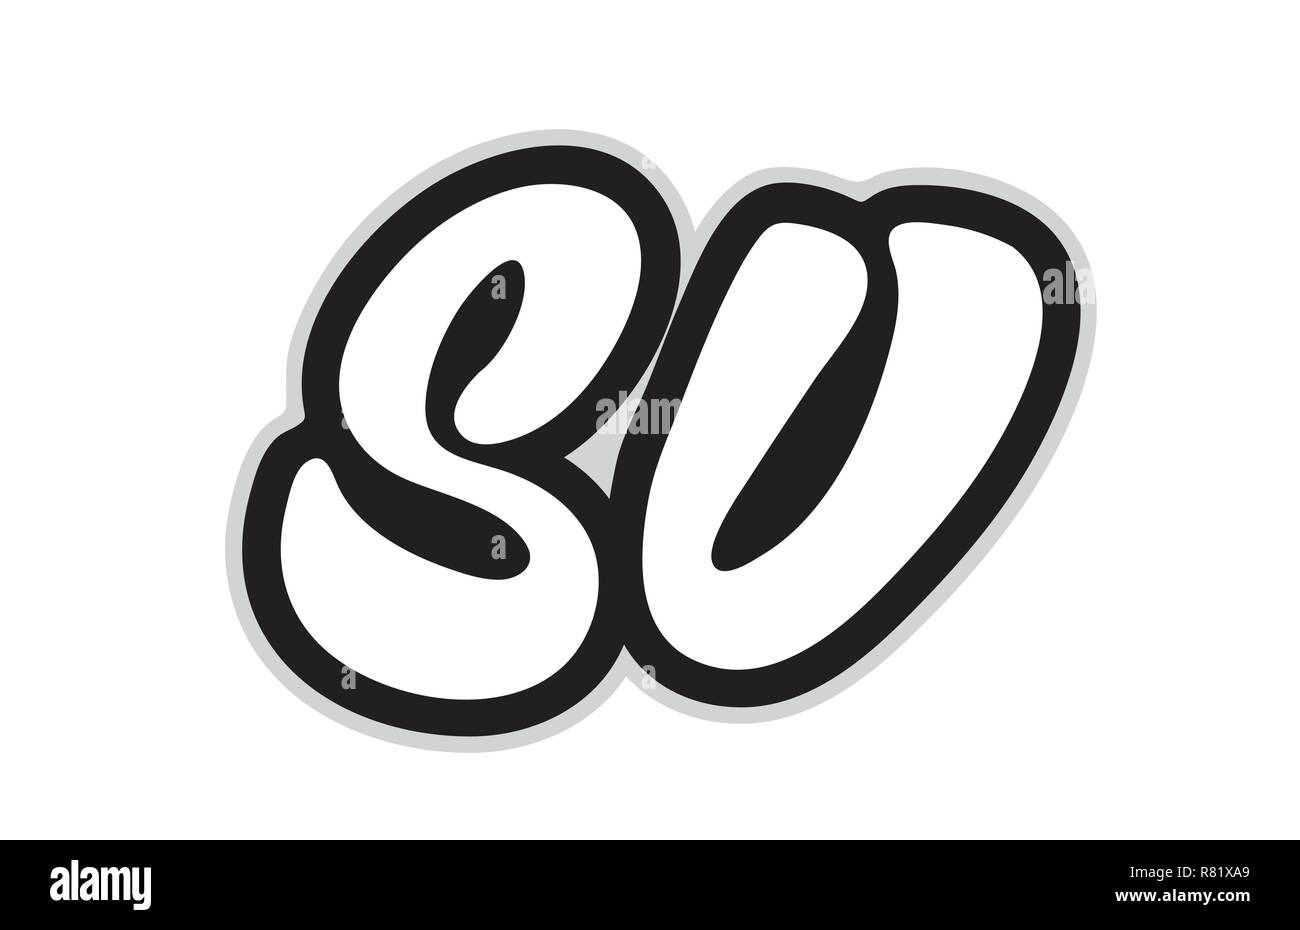 Design von schwarzen und weißen Buchstaben Kombination sv s v, das als Logo taugt, für ein Unternehmen oder ein Geschäft Stock Vektor